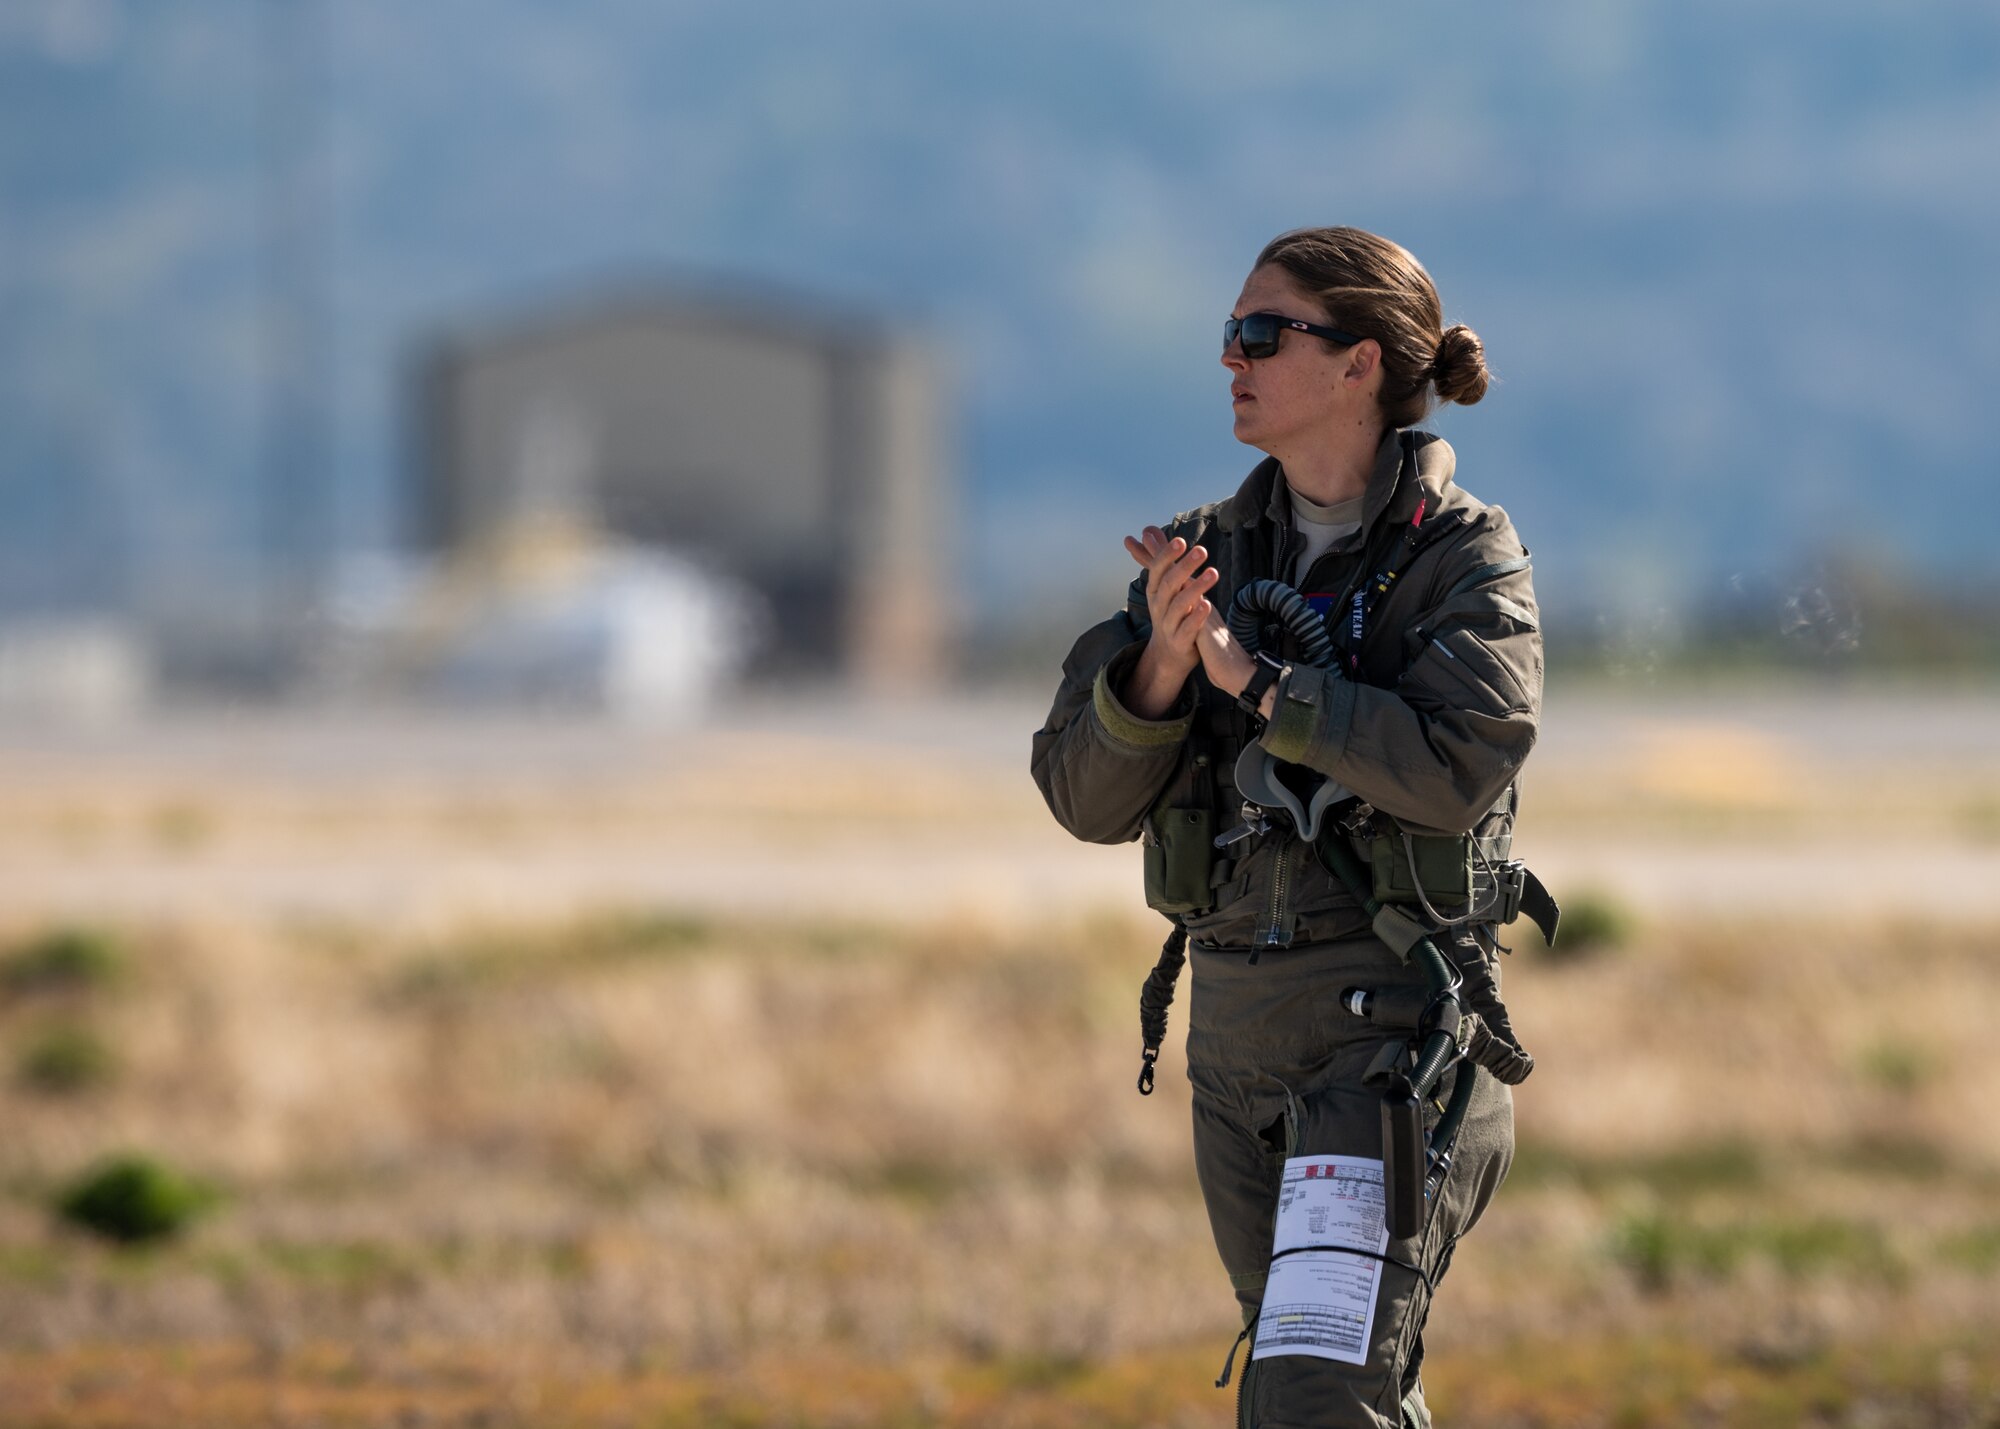 A female pilot walks across a runway